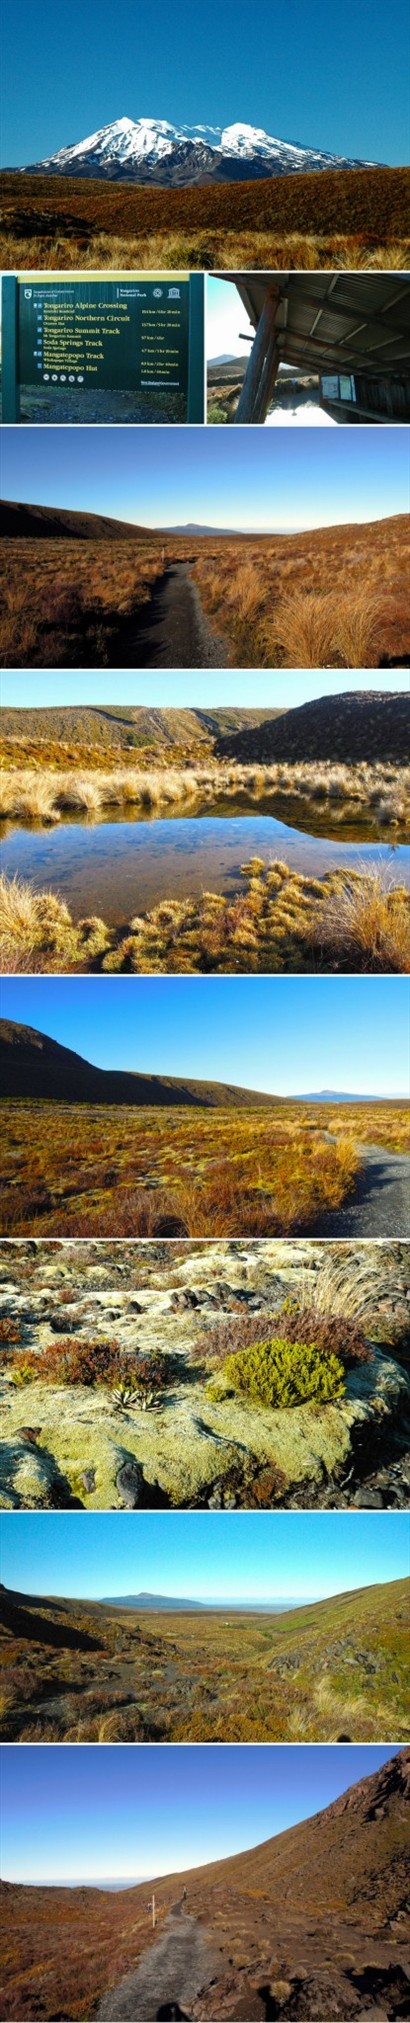 第一段Mangatepopo到Soda Spring，起點可以看到Mt. Ruapehu，沿途盡是低矮草披、當地獨特的地衣遍佈這一帶